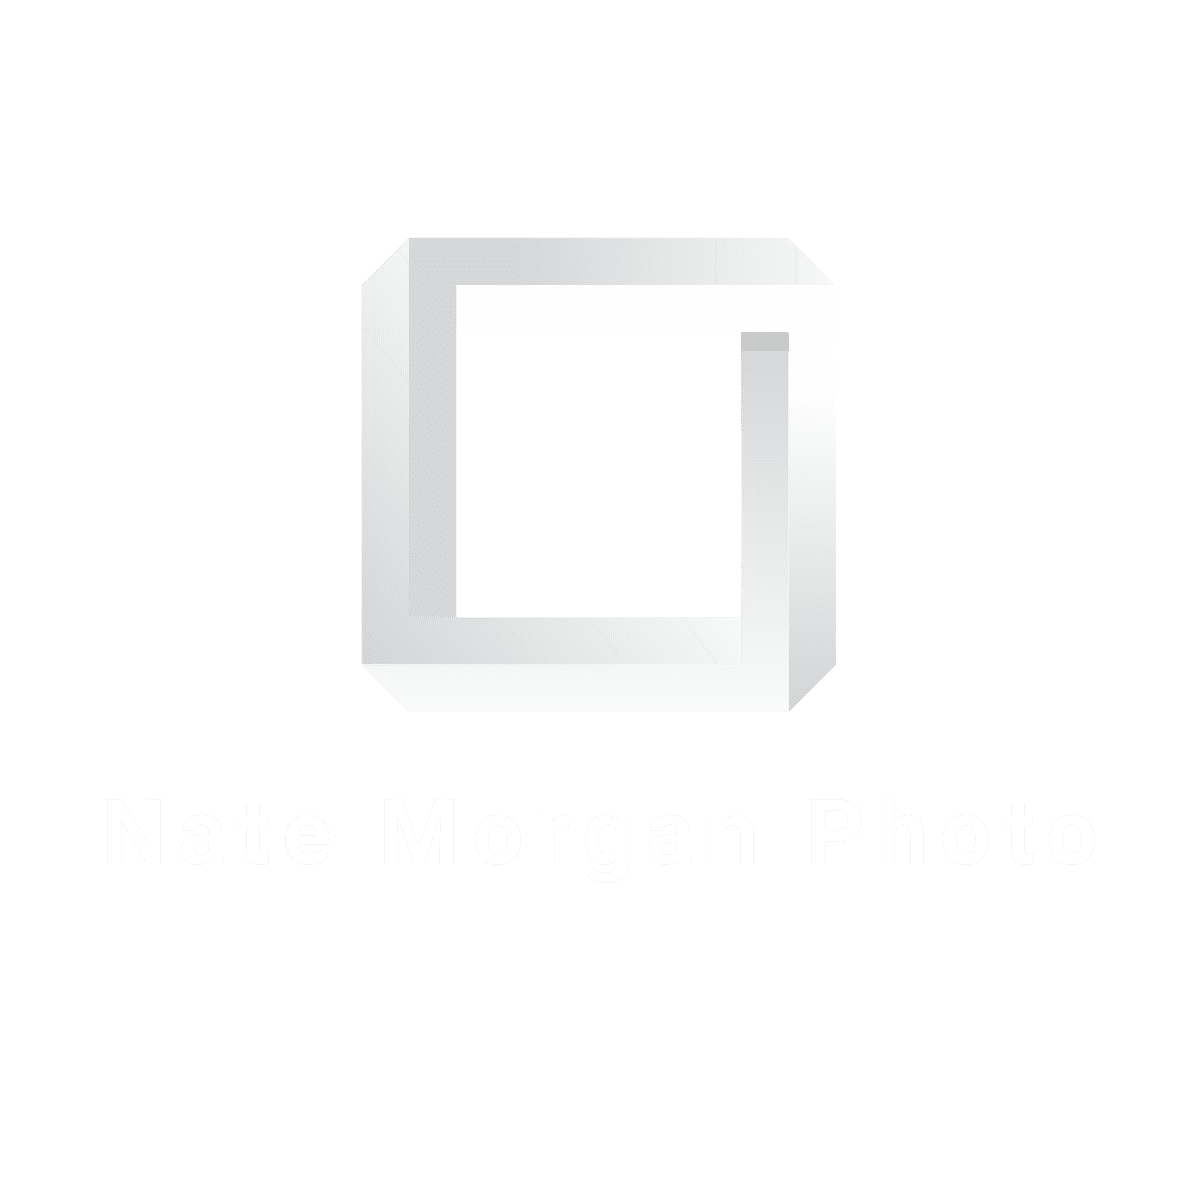 Nate Morgan